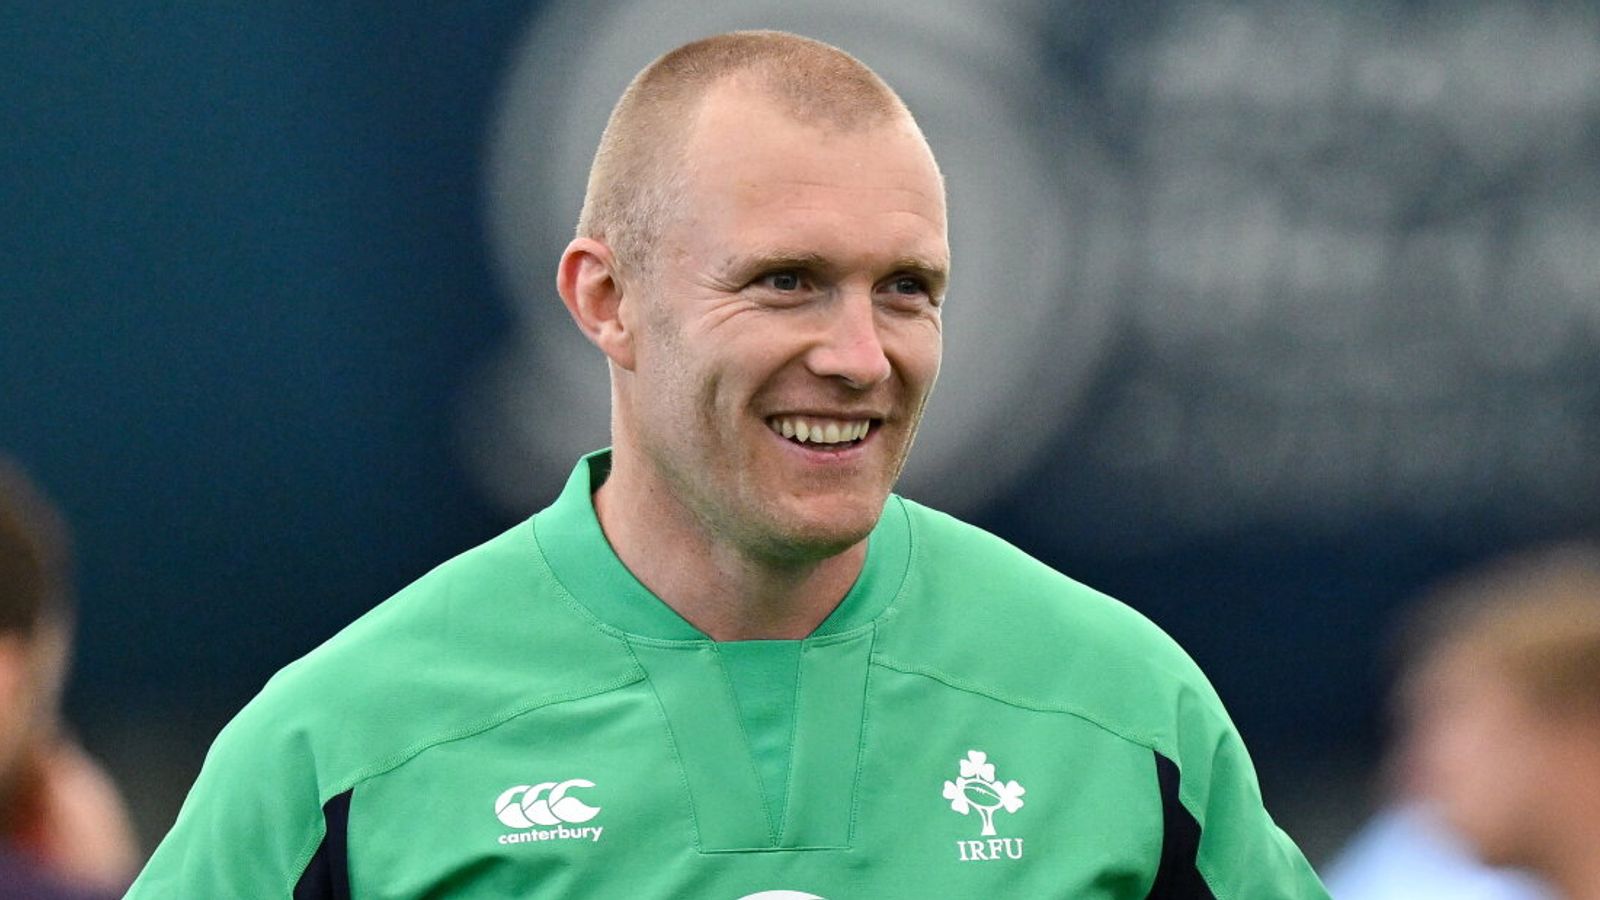 L’Irlandais Keith Earls confirme sa retraite du rugby à XV après la sortie de la Coupe du monde de rugby |  Actualités du rugby à XV